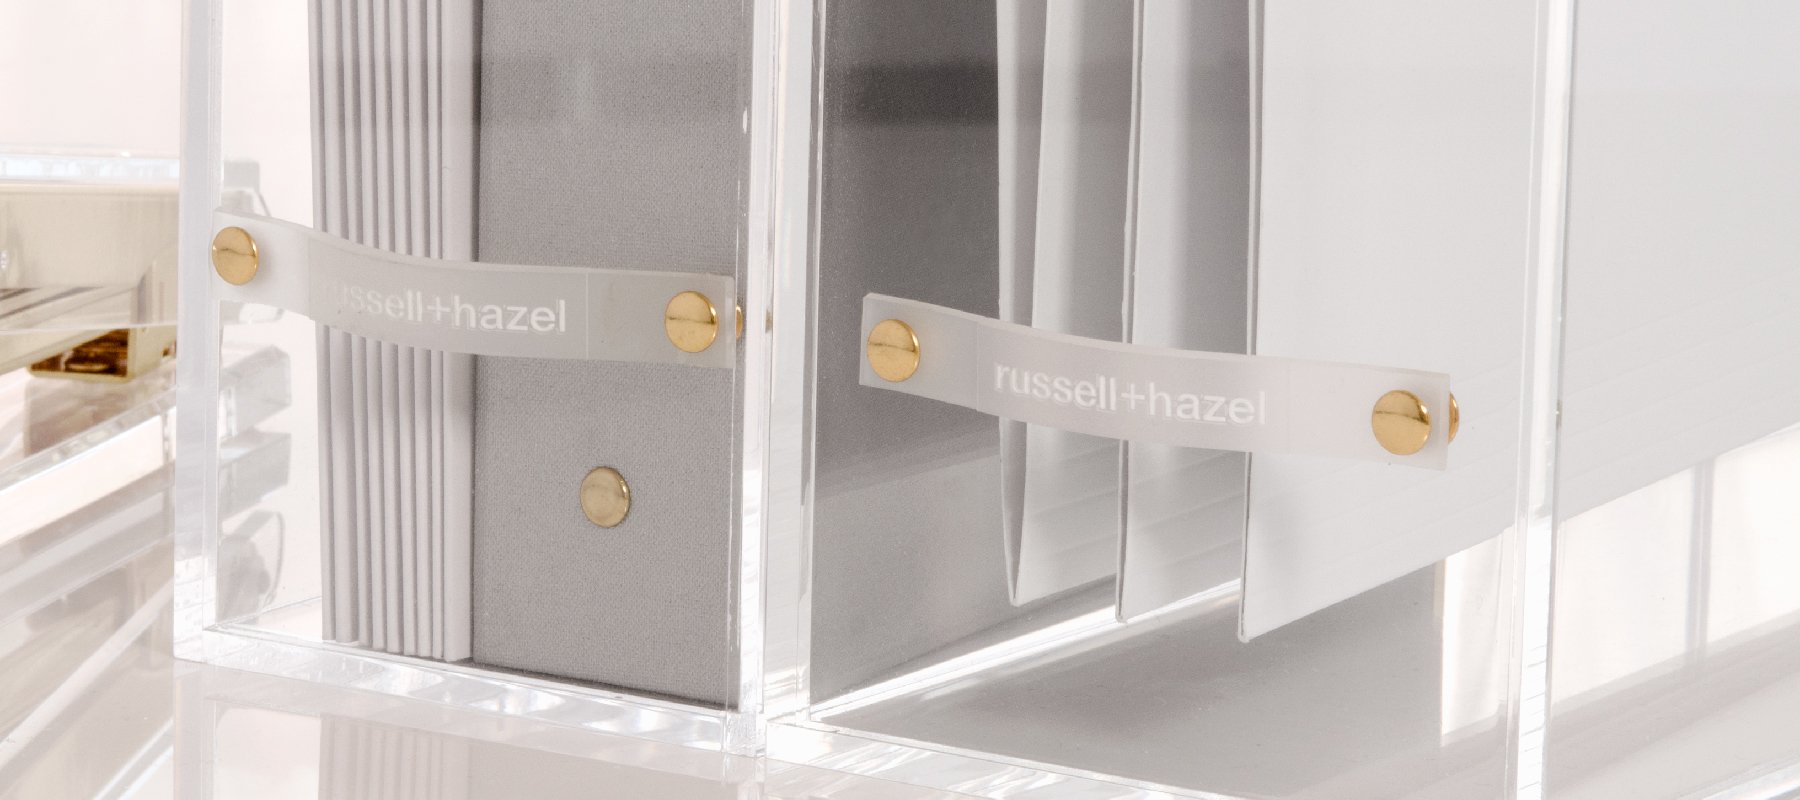 Shelf Organization - russell+hazel